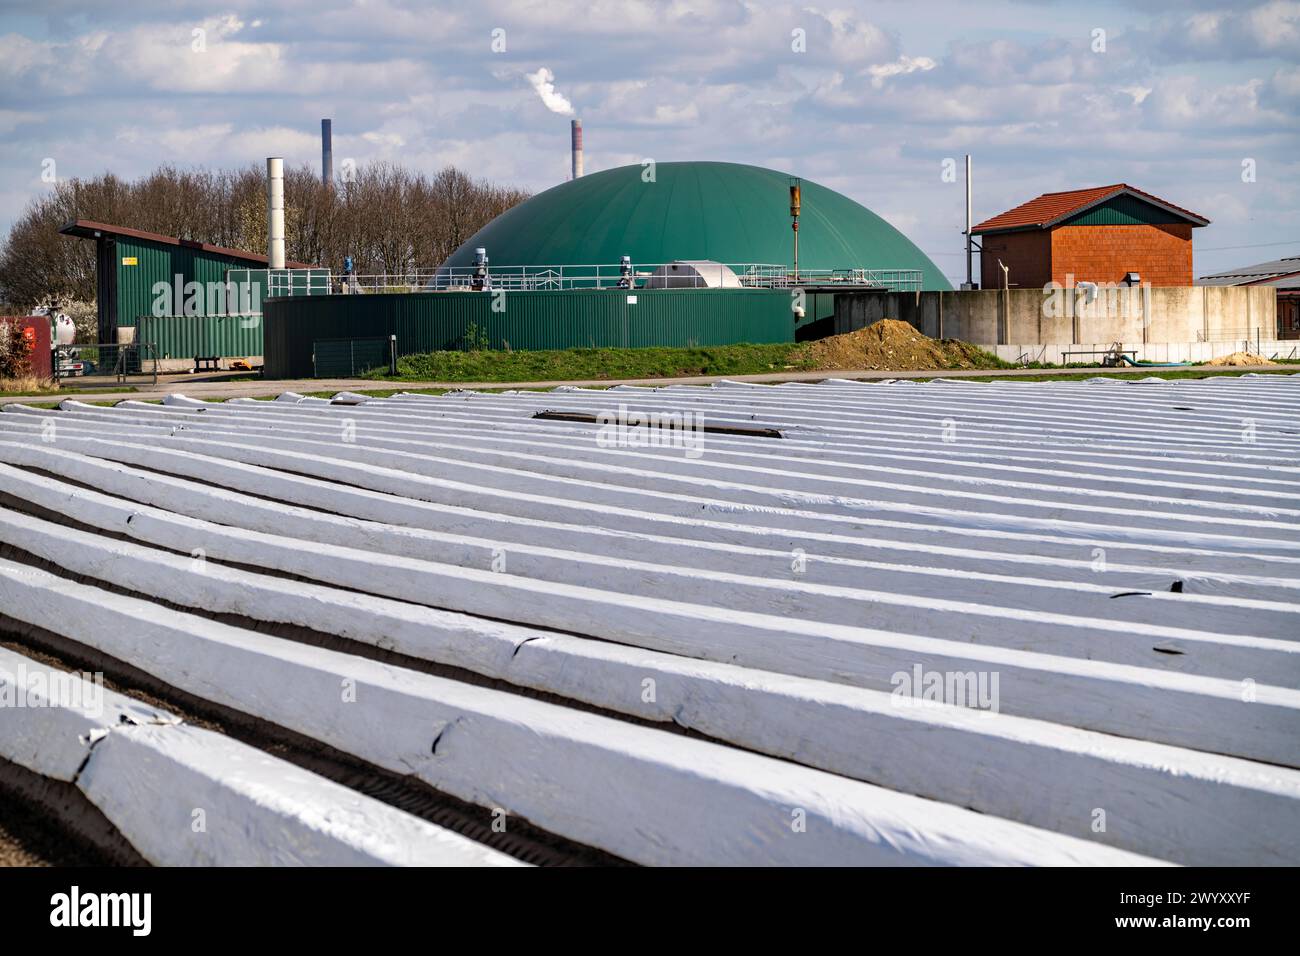 Campi di asparagi, steli di asparagi sotto stagnola, per una crescita più rapida, impianto di biogas in un'azienda agricola, vicino a Kirchhellen, distretto di Bottrop, NRW, Germania, Foto Stock